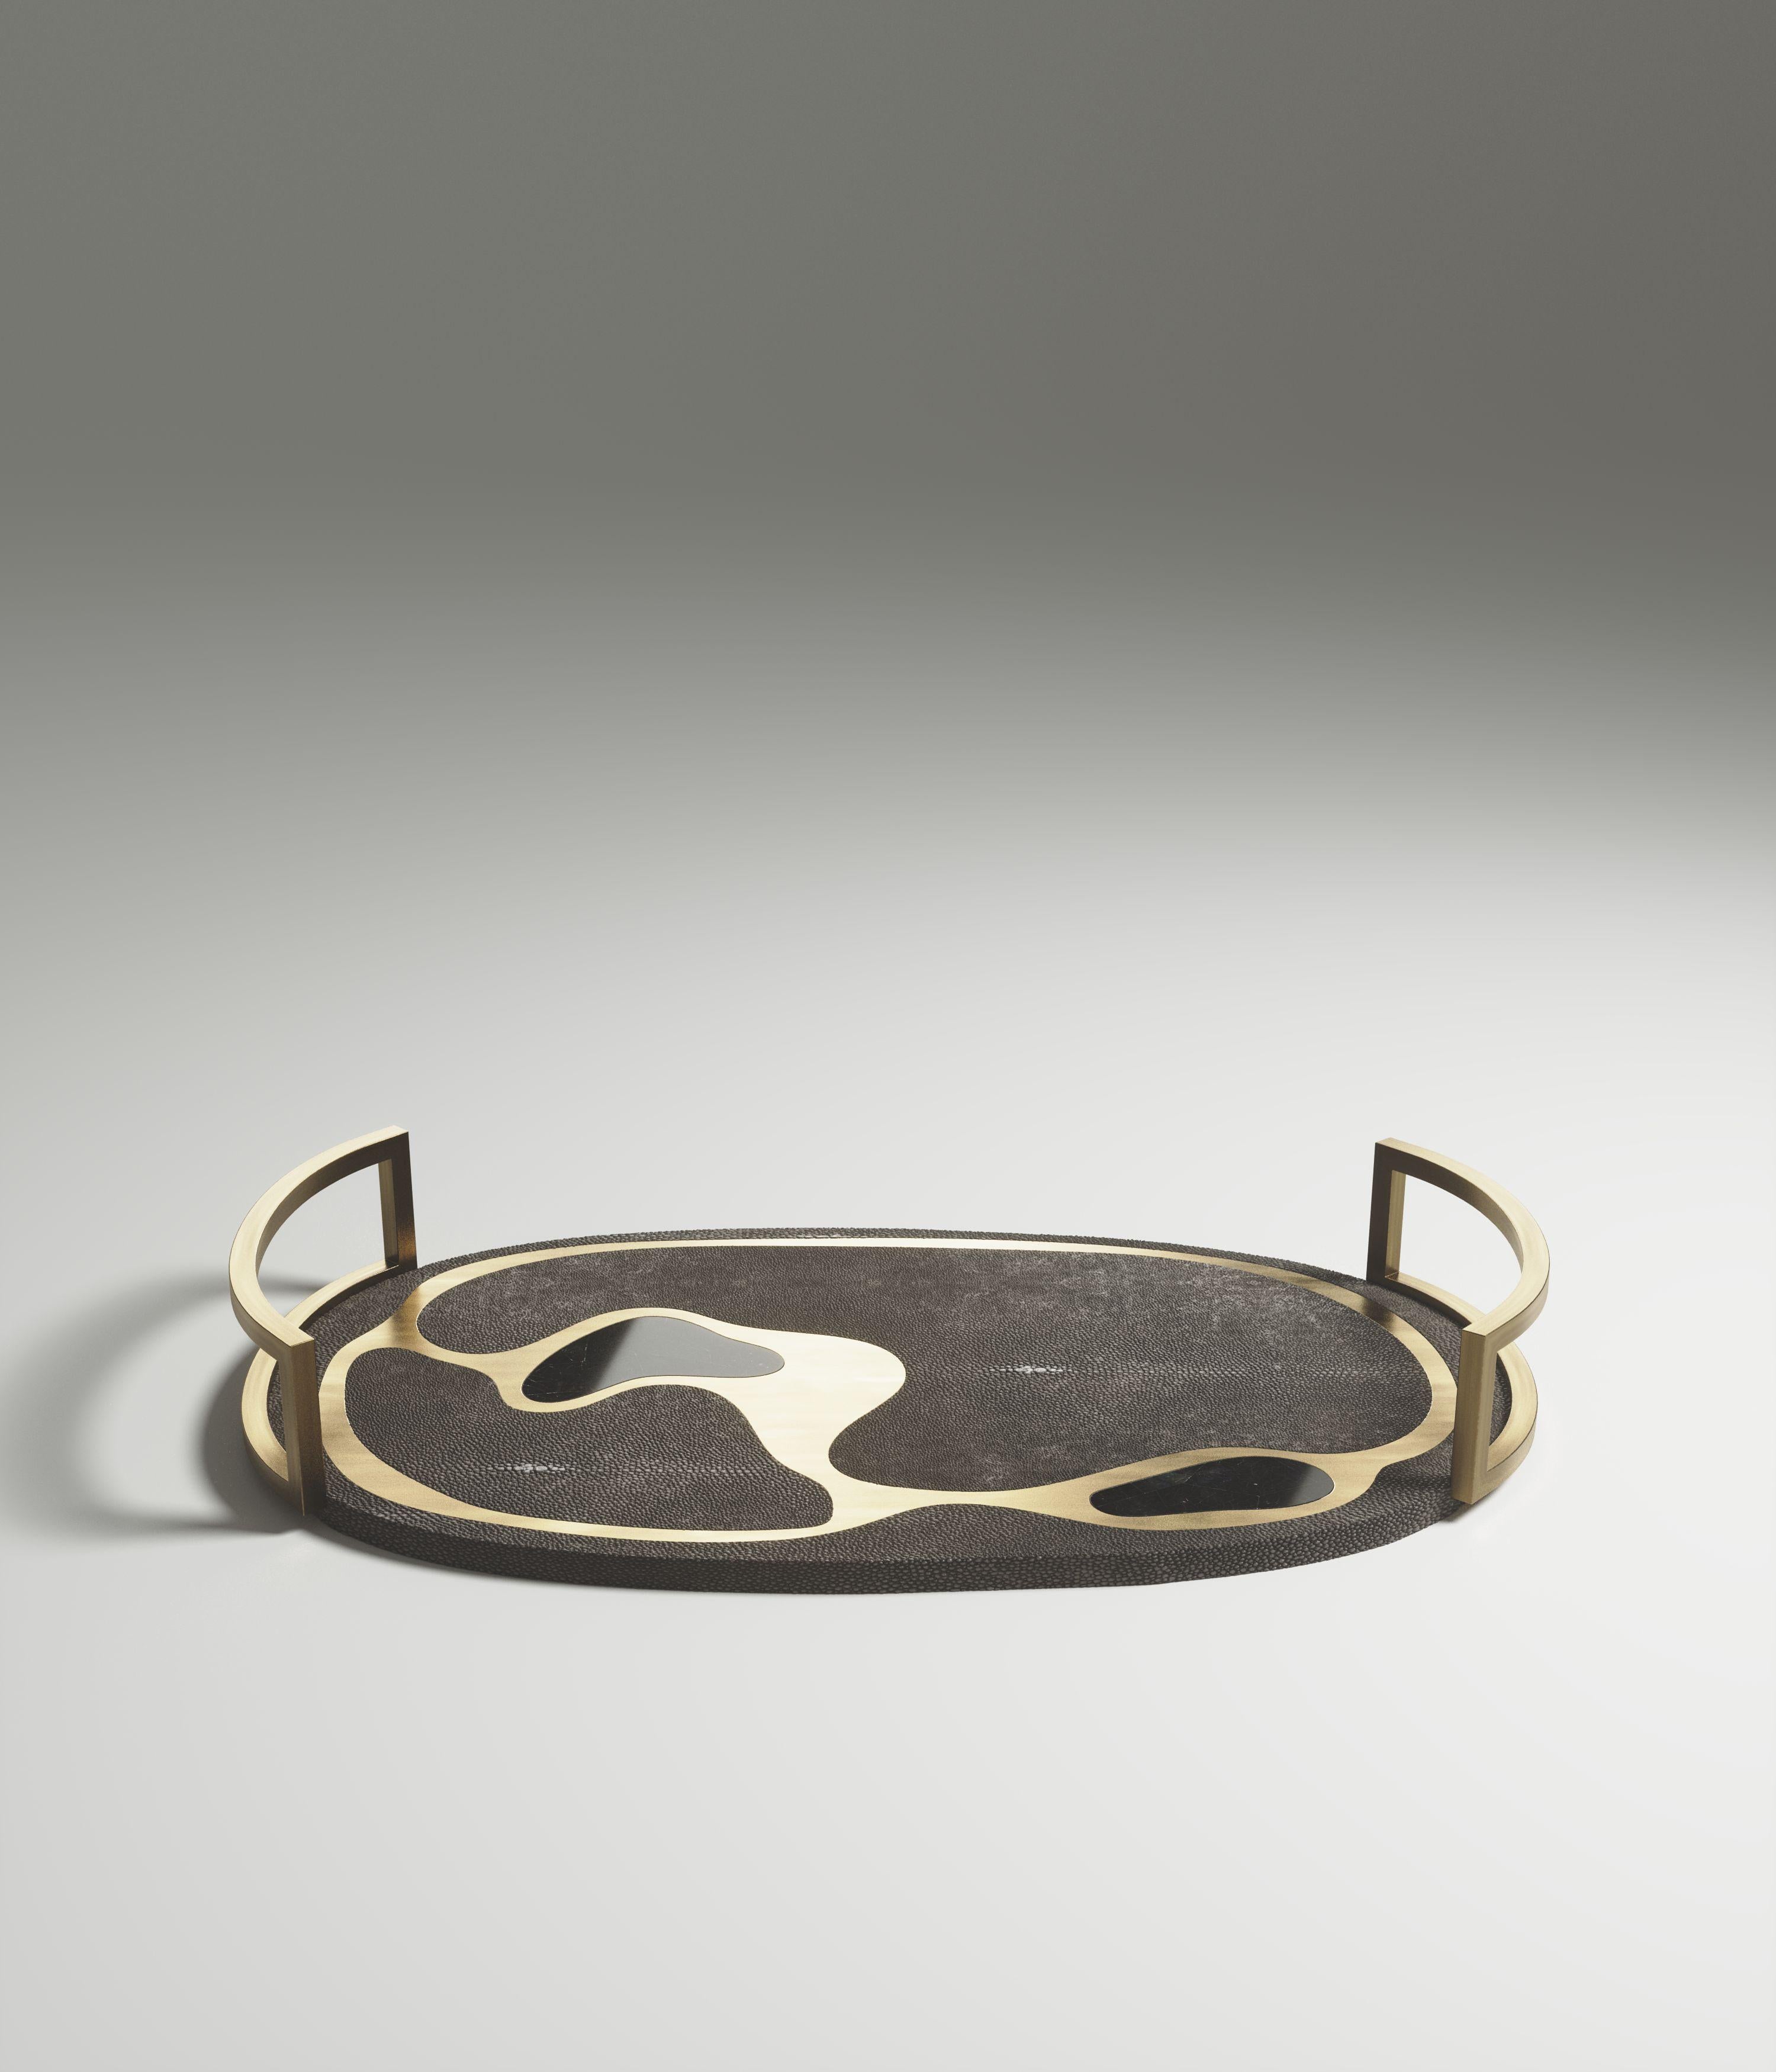 Le plateau ovale Mask de Kifu Paris est une pièce polyvalente et organique. Le plateau et la base amorphes sont incrustés d'un mélange de galuchat noir, de coquillage noir et de laiton bronze-patine. Cette pièce a été conçue par Kifu Augousti, la